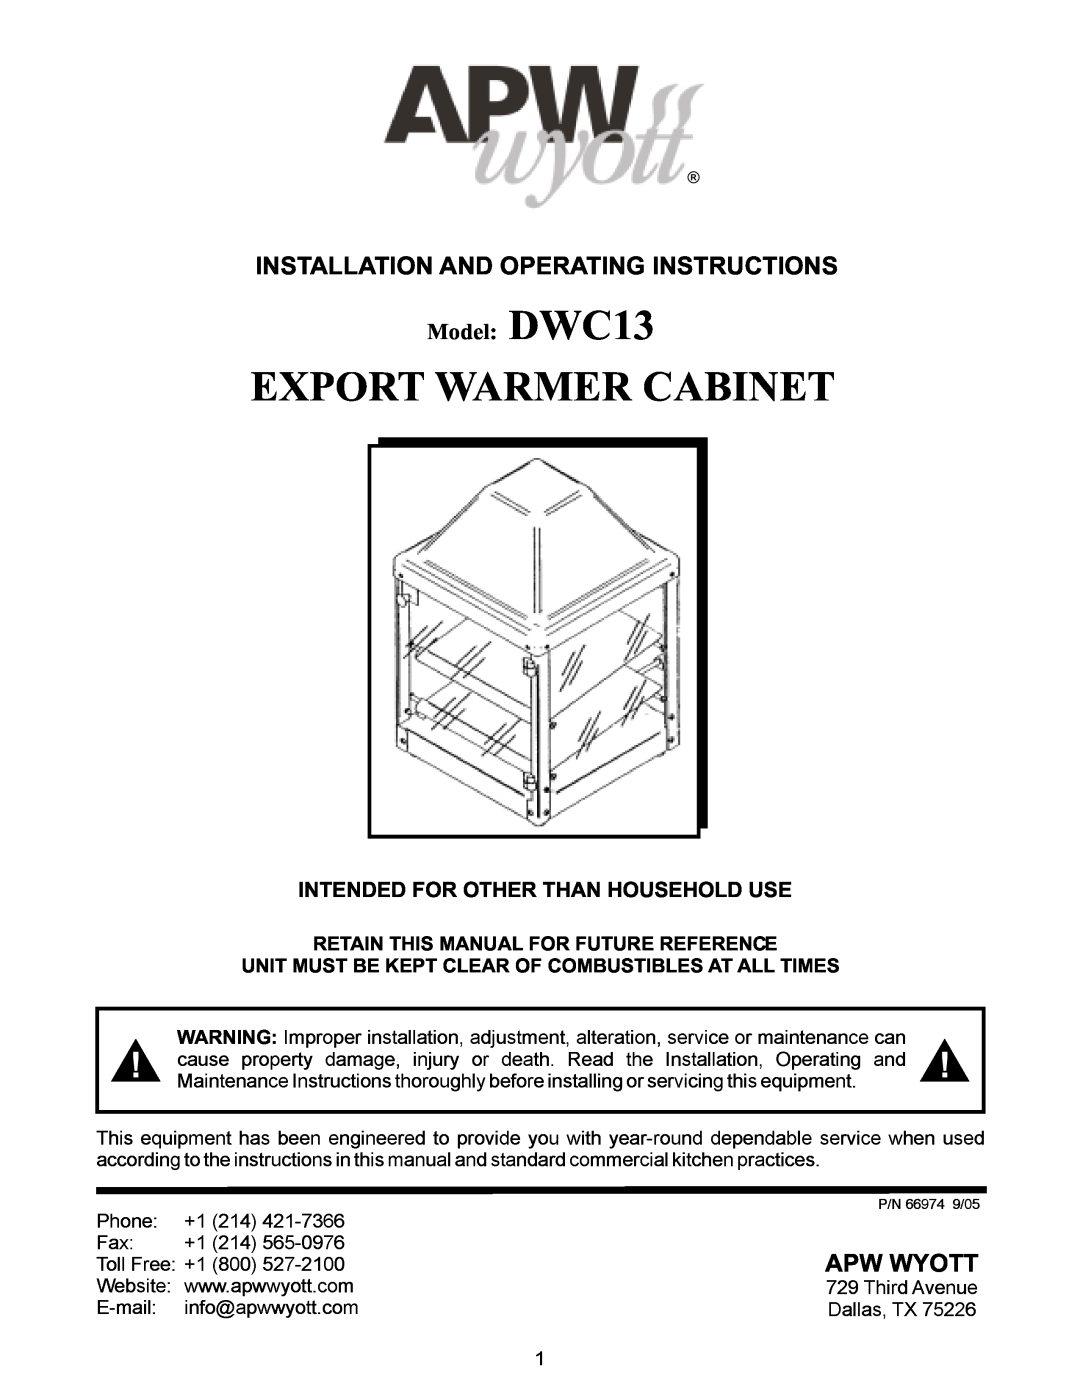 APW Wyott manual ollFree +180057-2100, E-mail, Export Warmer Cabinet, Website www, Model DWC13, ThisPon, 421650976 